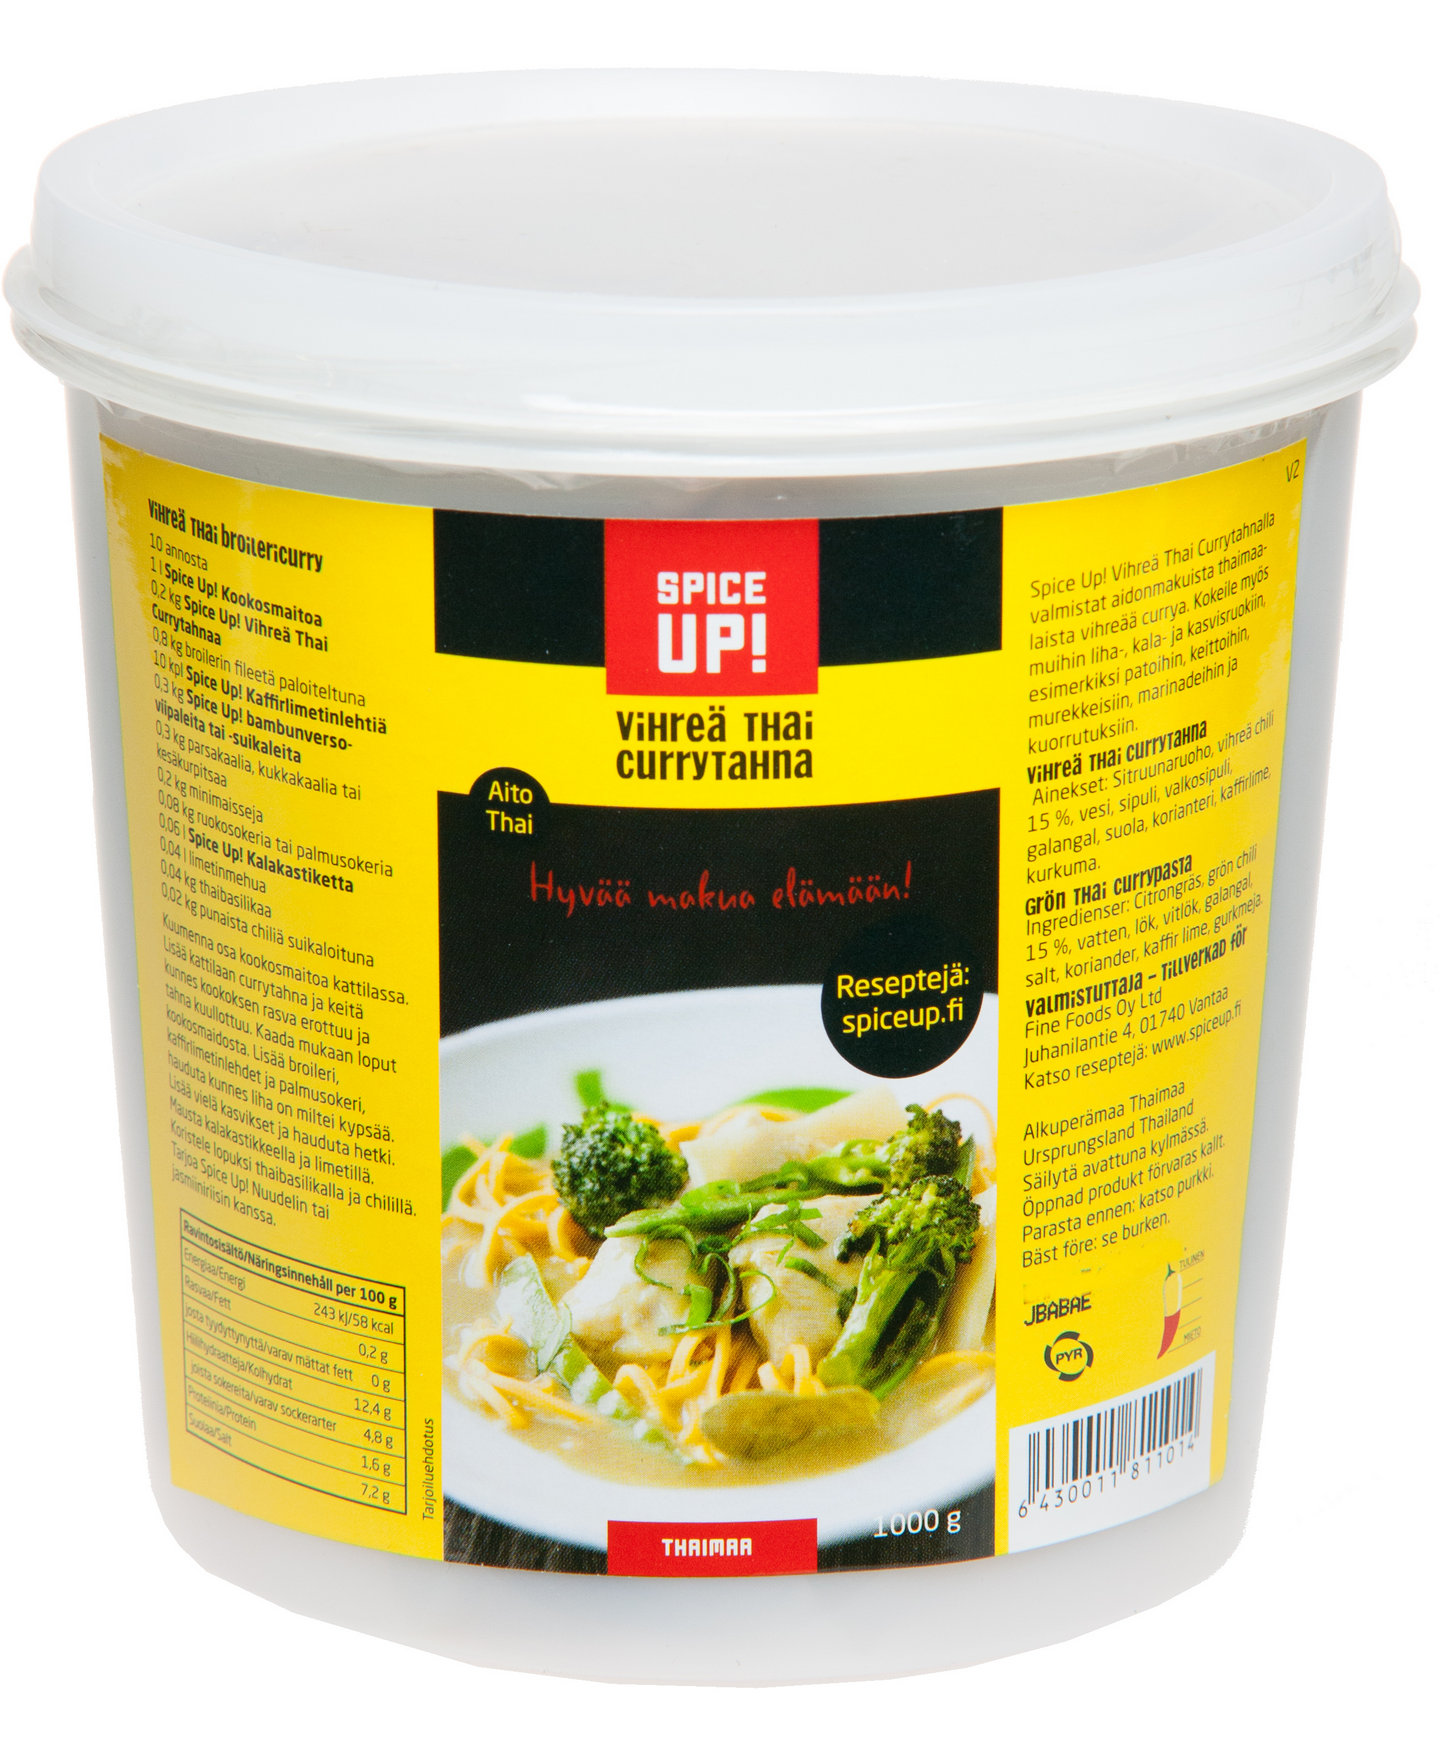 Spice Up! Vihreä thai currytahna 1000g